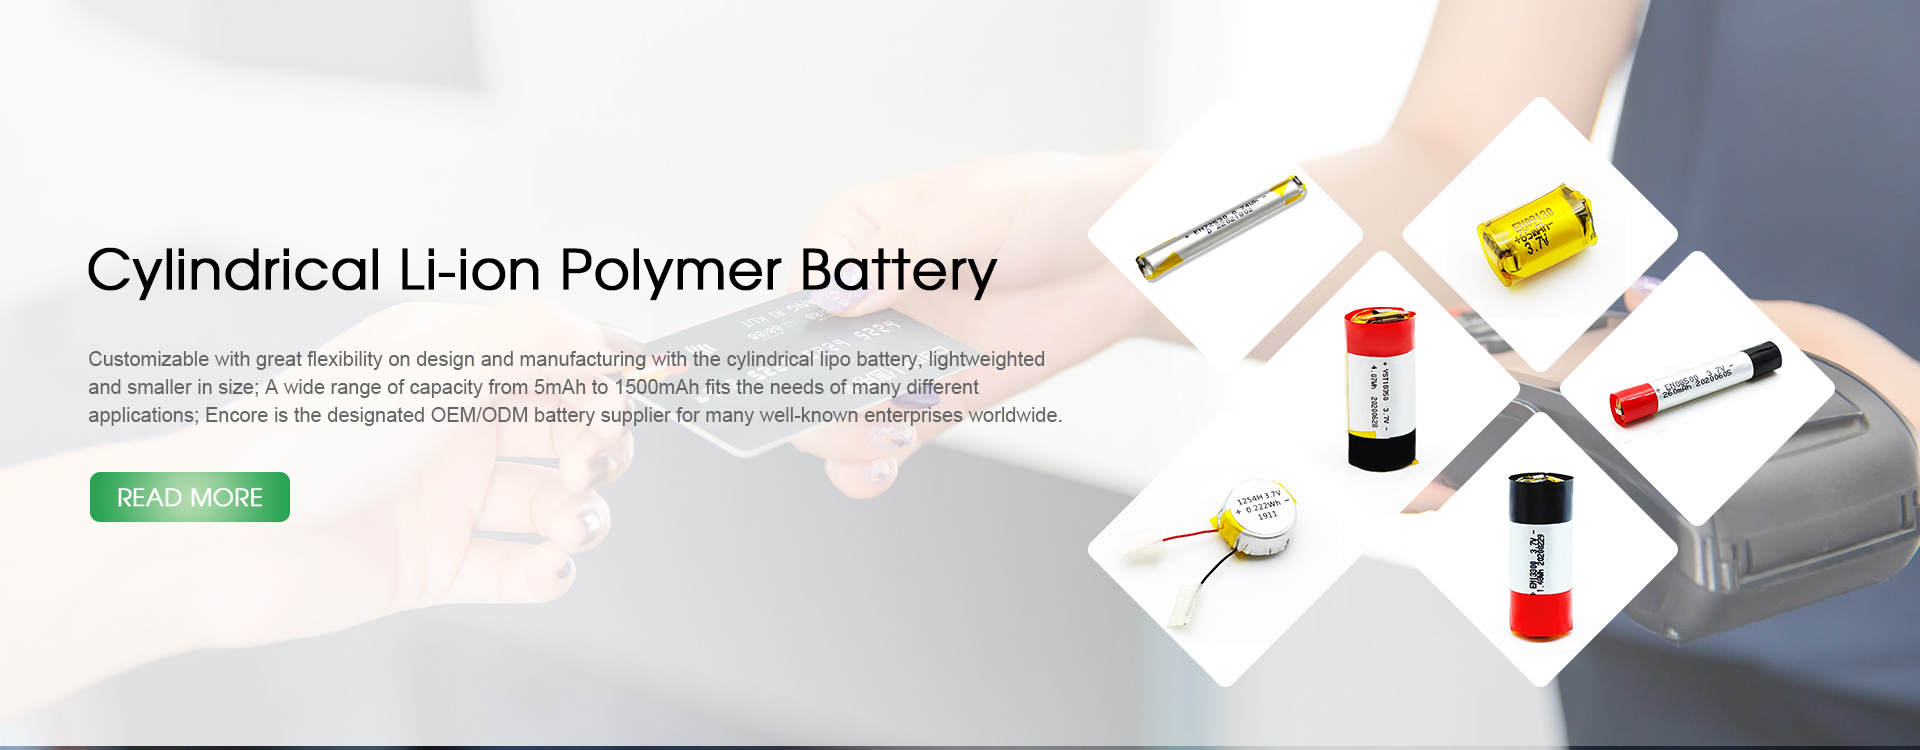 Li polimerozko bateria zilindrikoen fabrikatzaileak